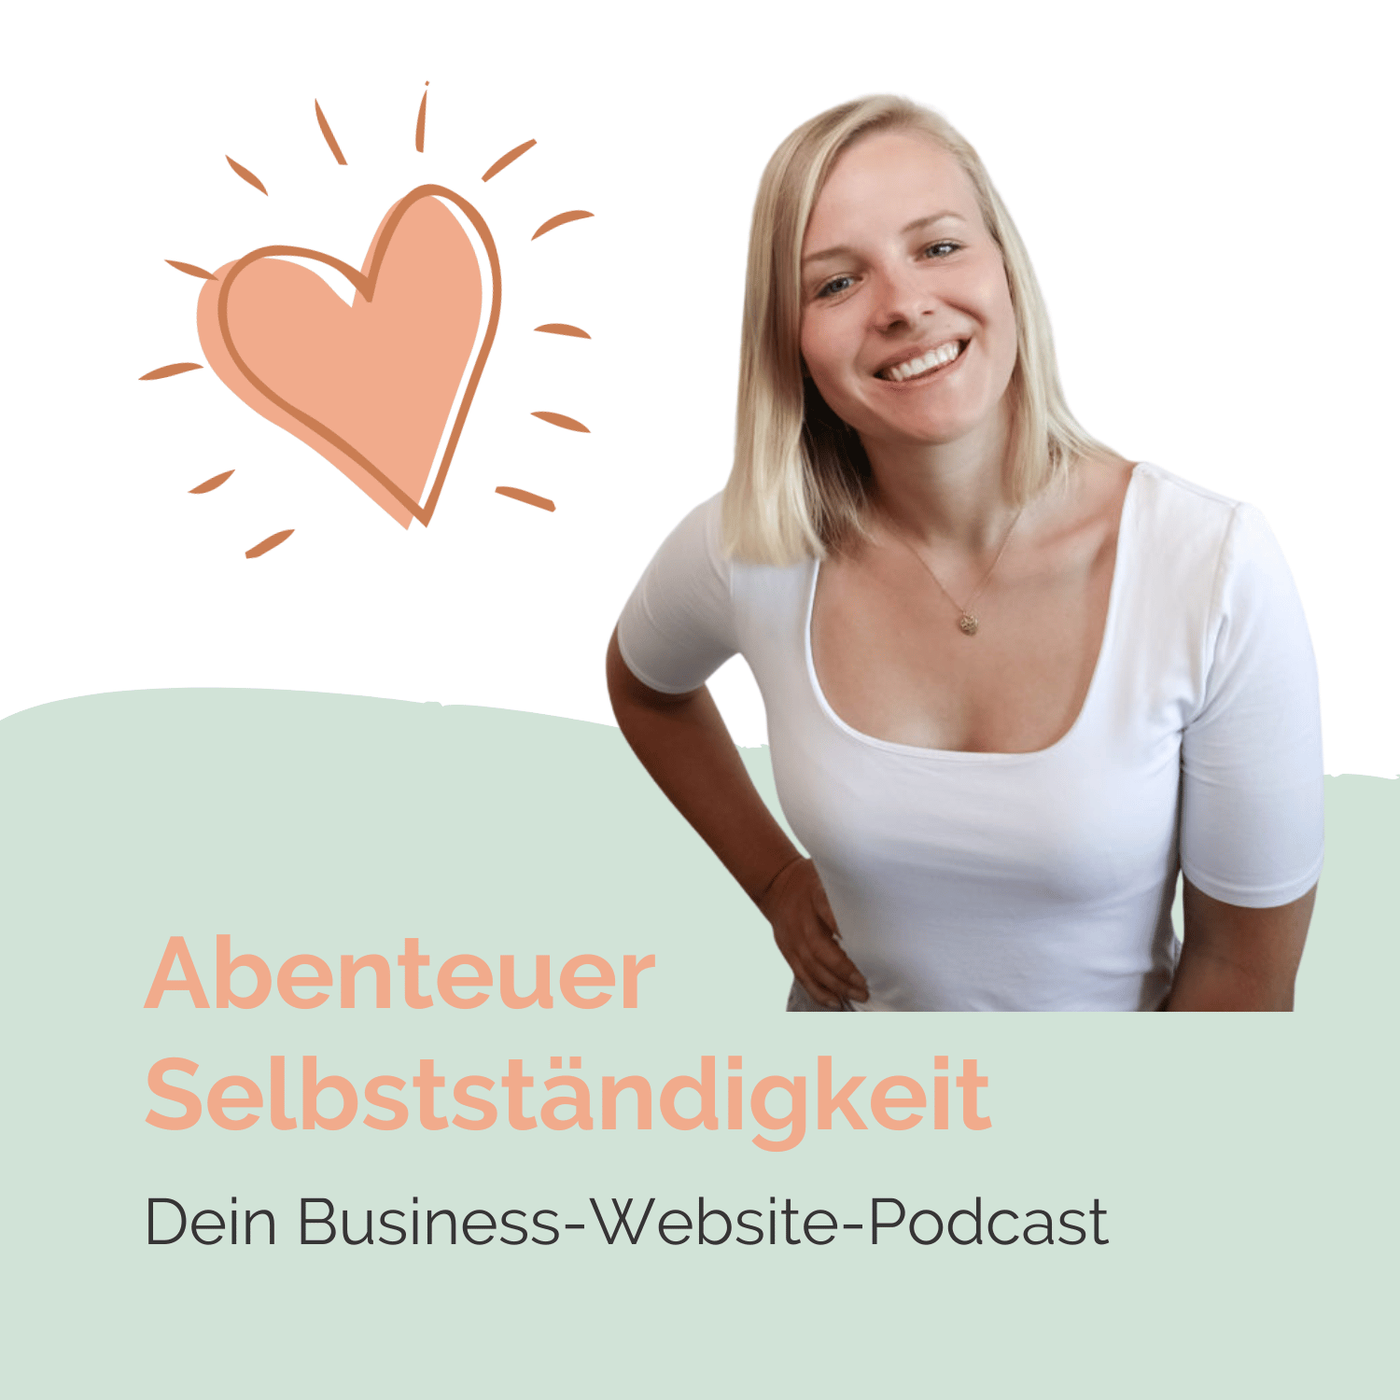 Abenteuer Selbstständigkeit: Dein Business-Website-Podcast